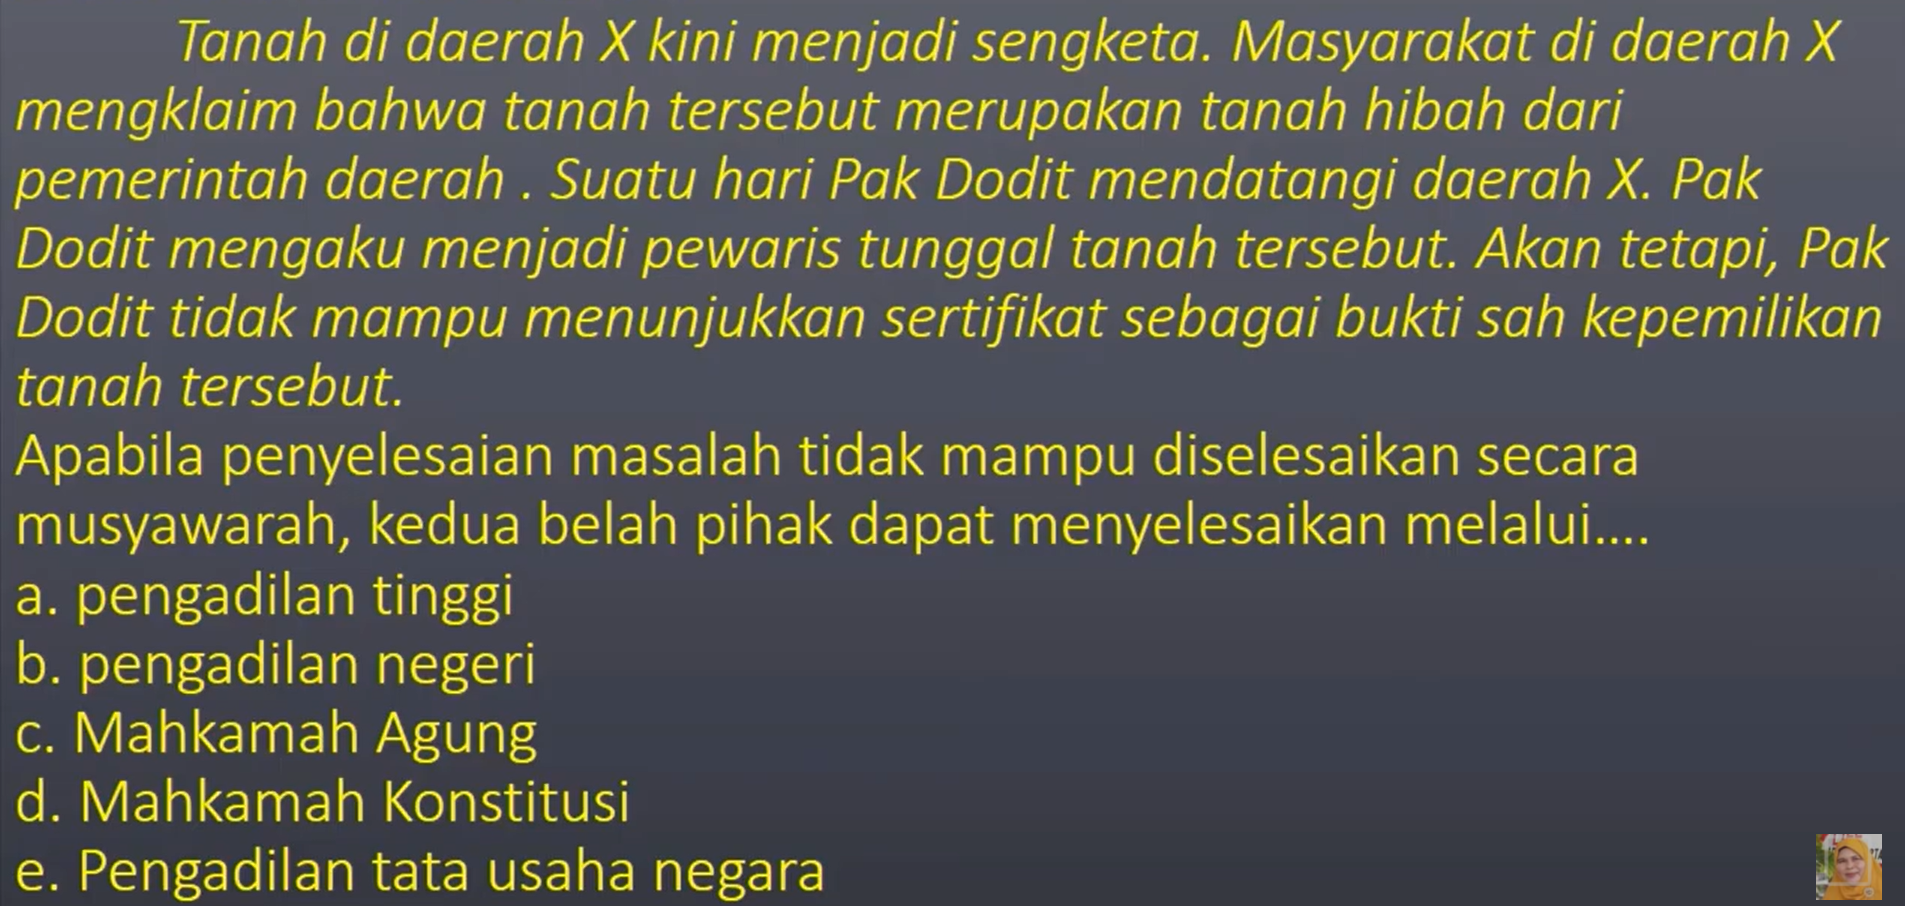 Latihan Soal Uji Kompetensi 2 PKN Kelas 11 Bab 3 Sistem Hukum dan Peradilan di Indonesia